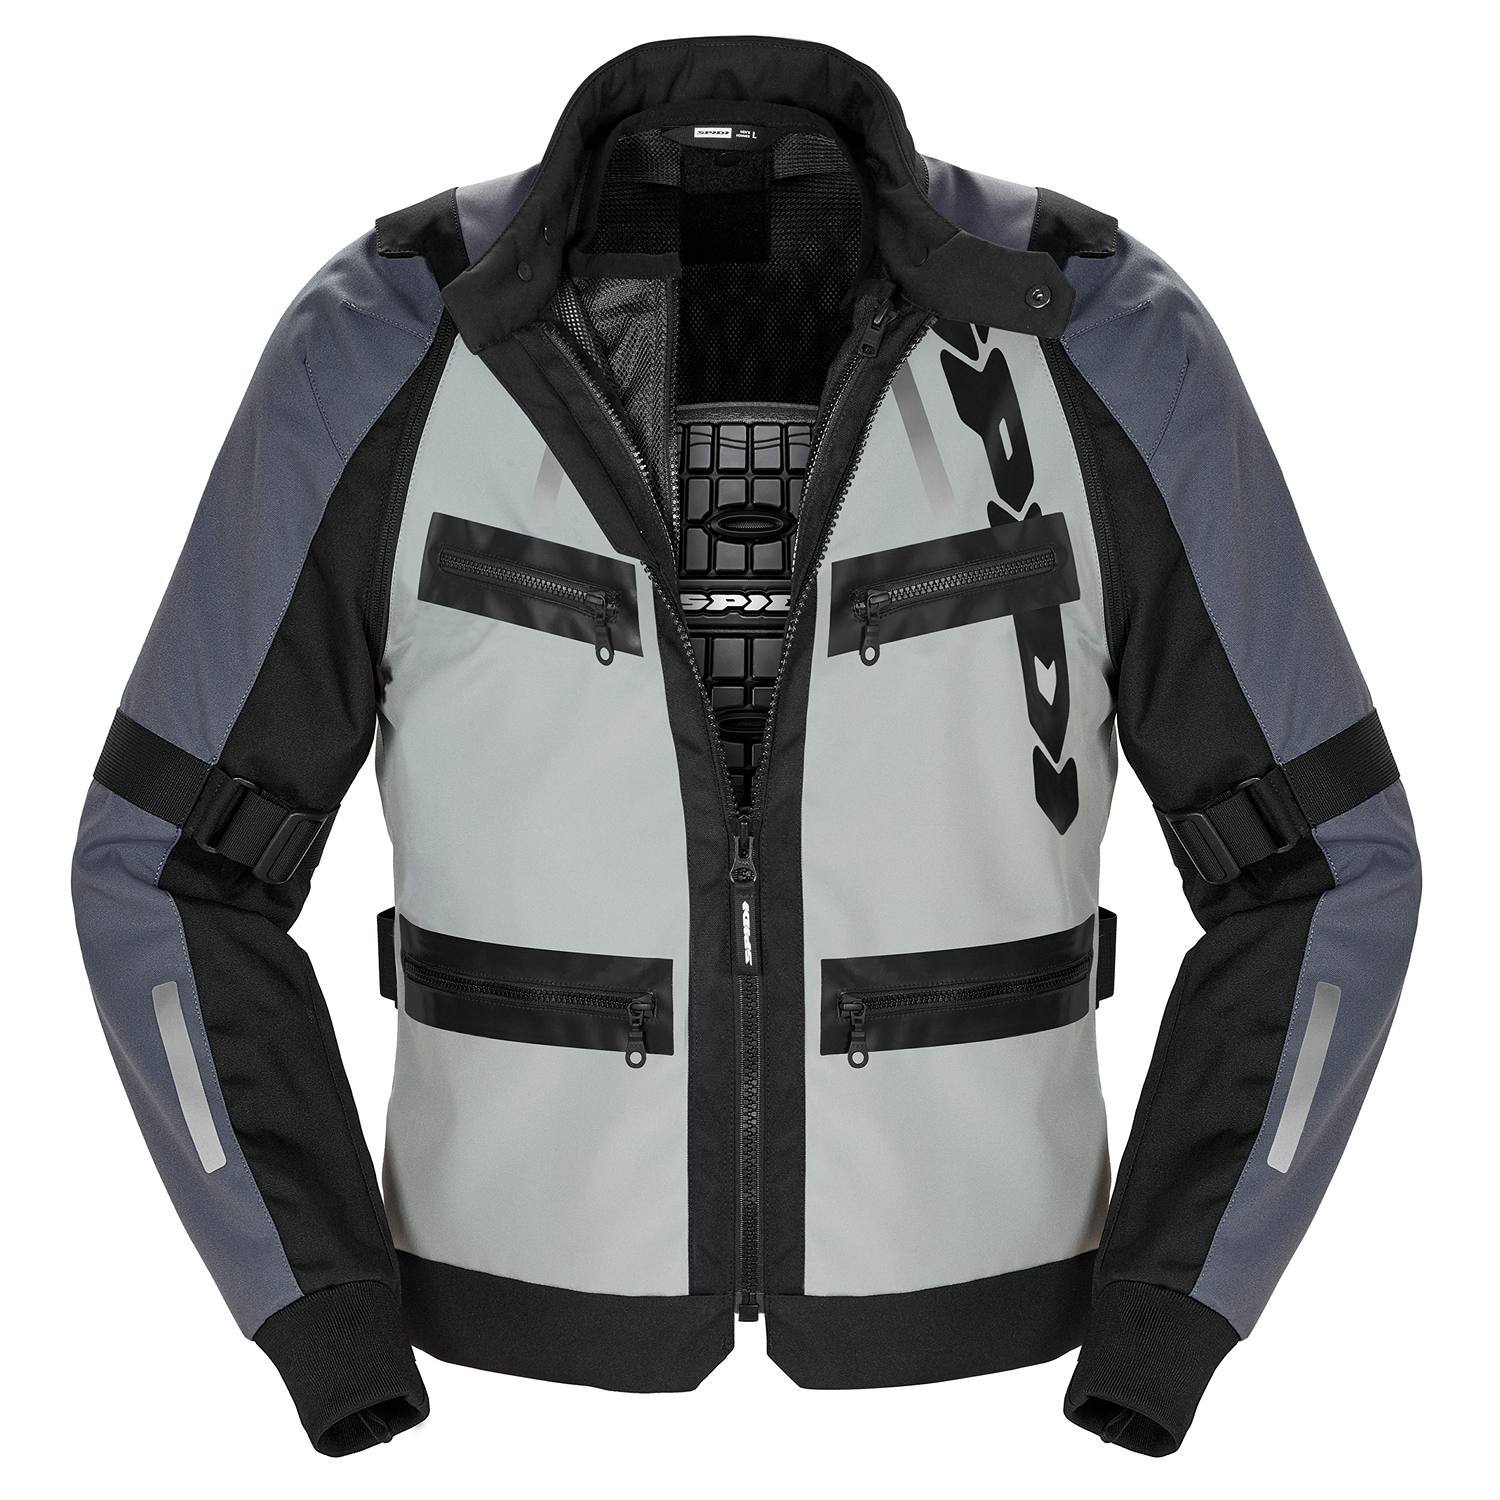 Image of Spidi Enduro Pro Jacket Black Grey Size 2XL ID 8030161484915